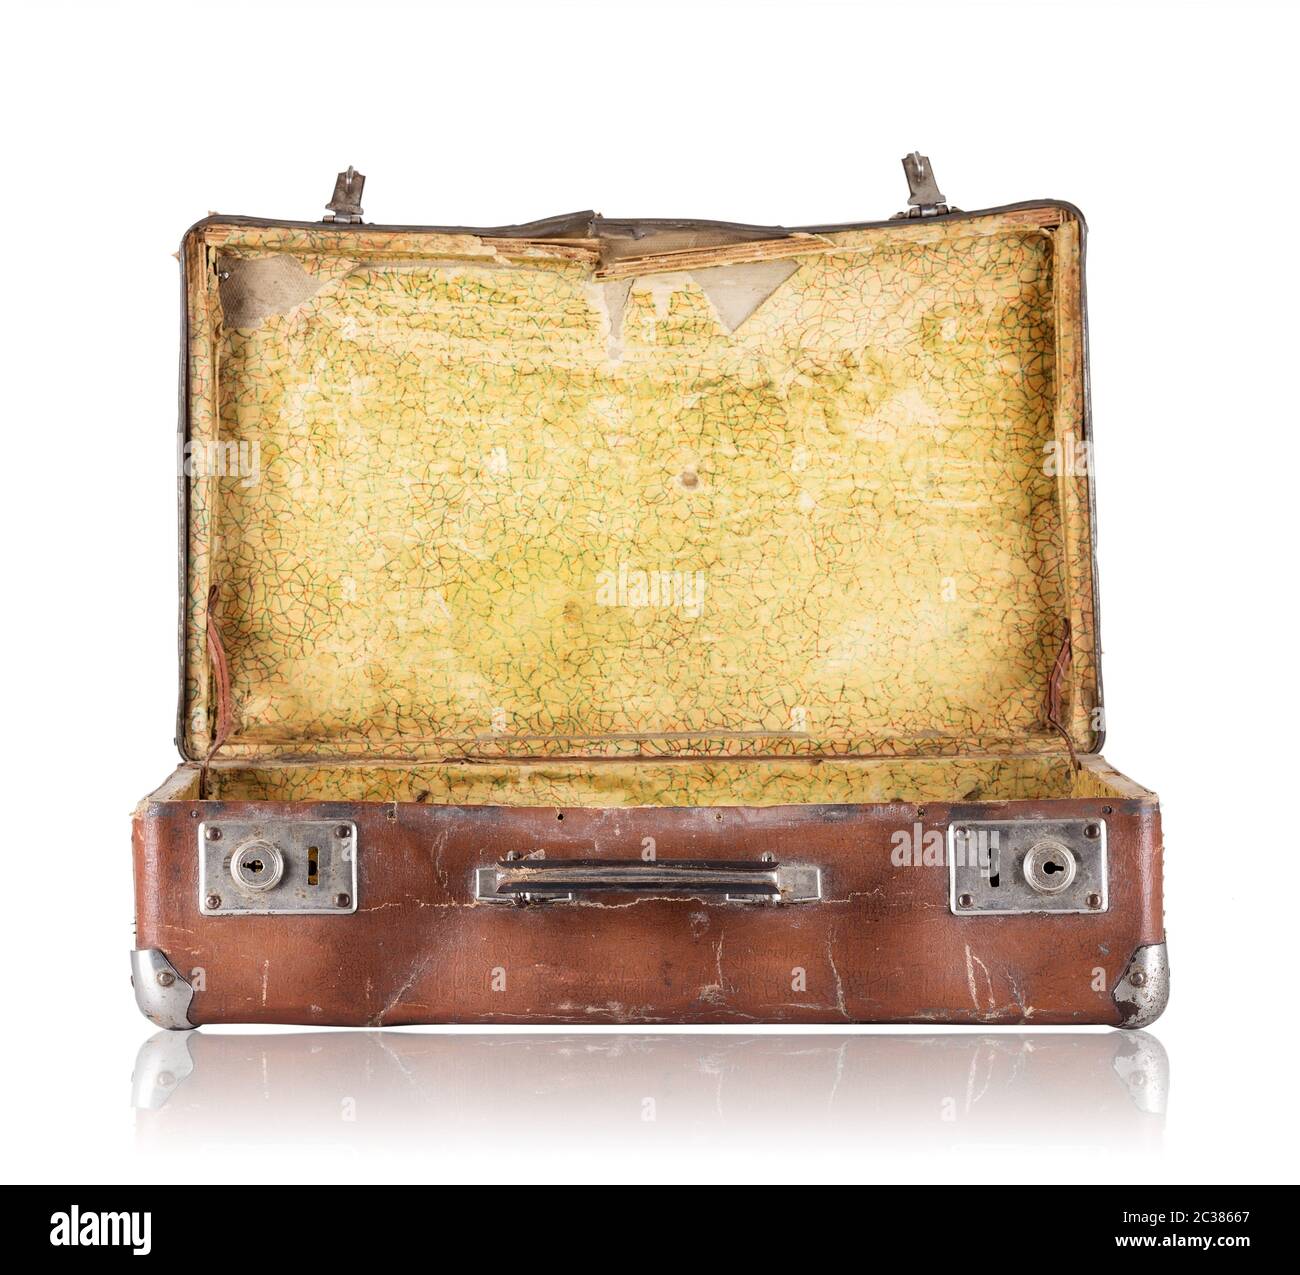 Aprire vecchia valigia con tappezzeria di colore giallo all'interno isolato su sfondo bianco Foto Stock